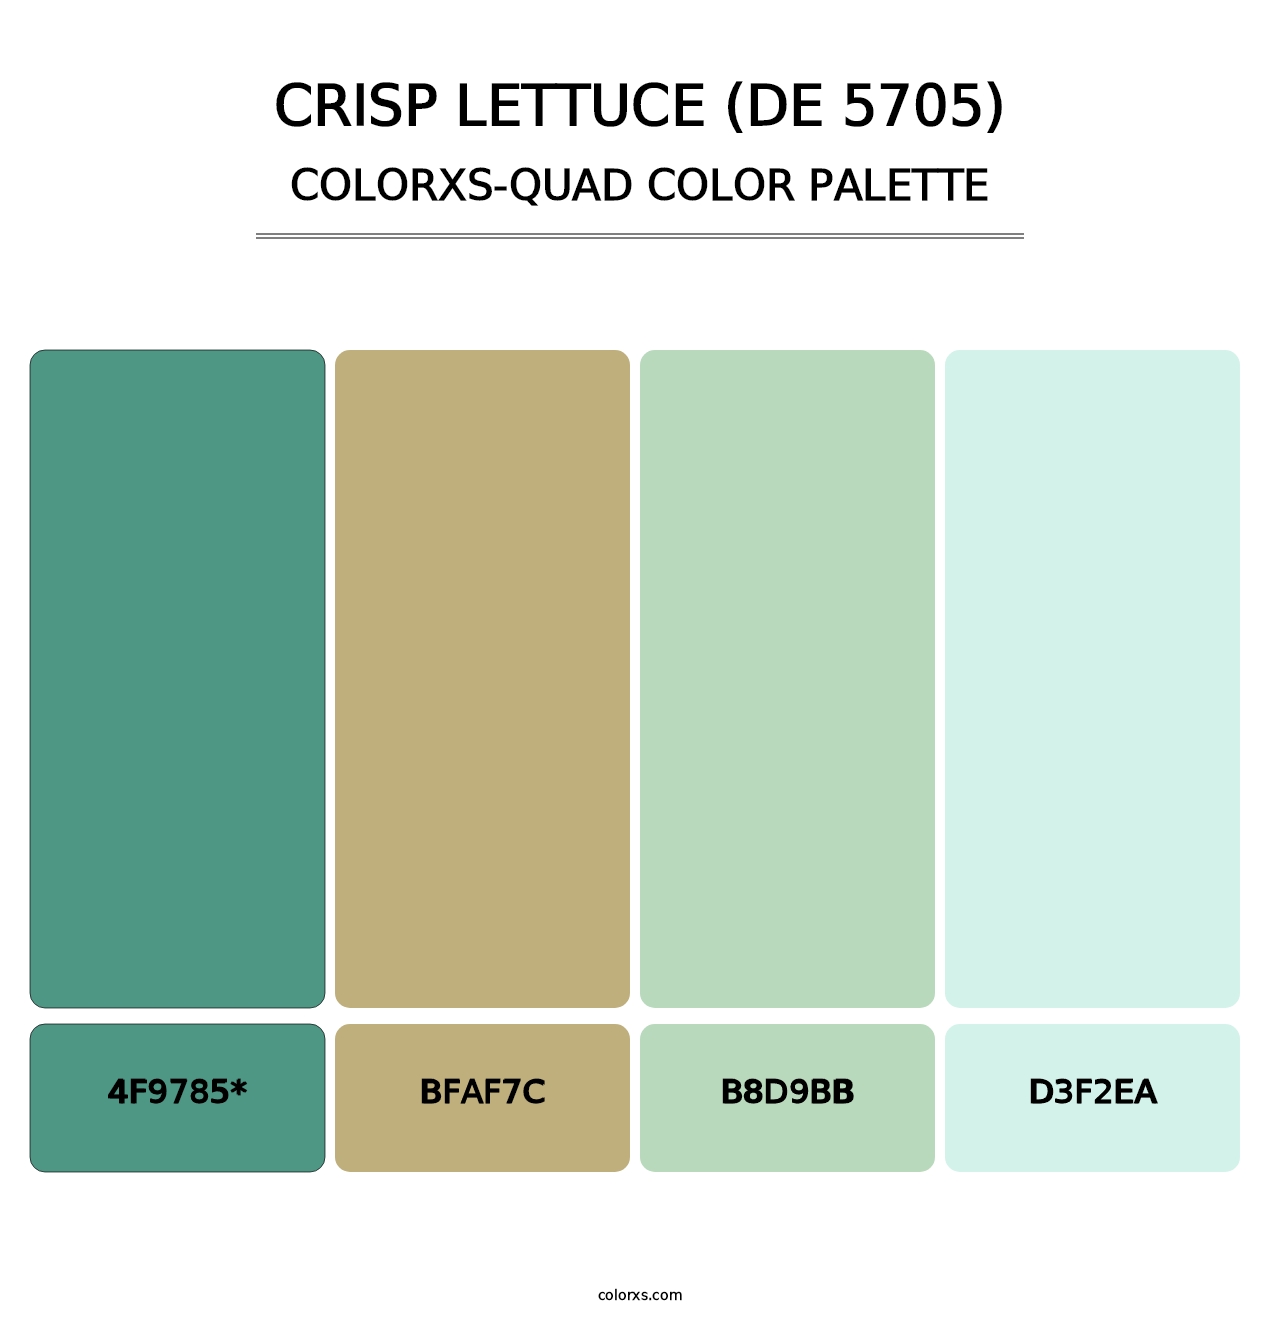 Crisp Lettuce (DE 5705) - Colorxs Quad Palette